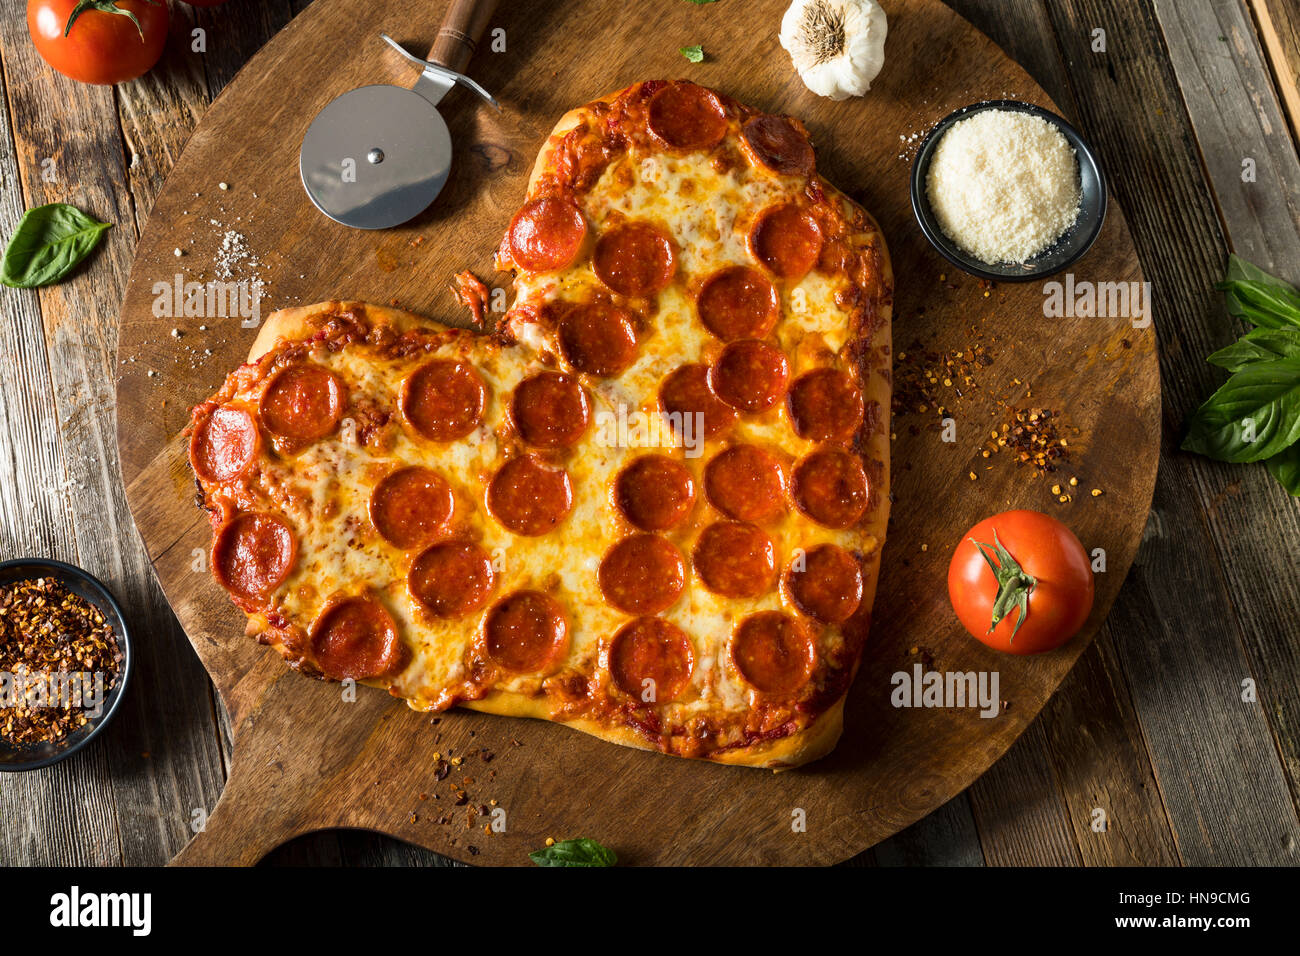 En forme de coeur fait maison prêt à manger de la Pizza au Pepperoni Banque D'Images